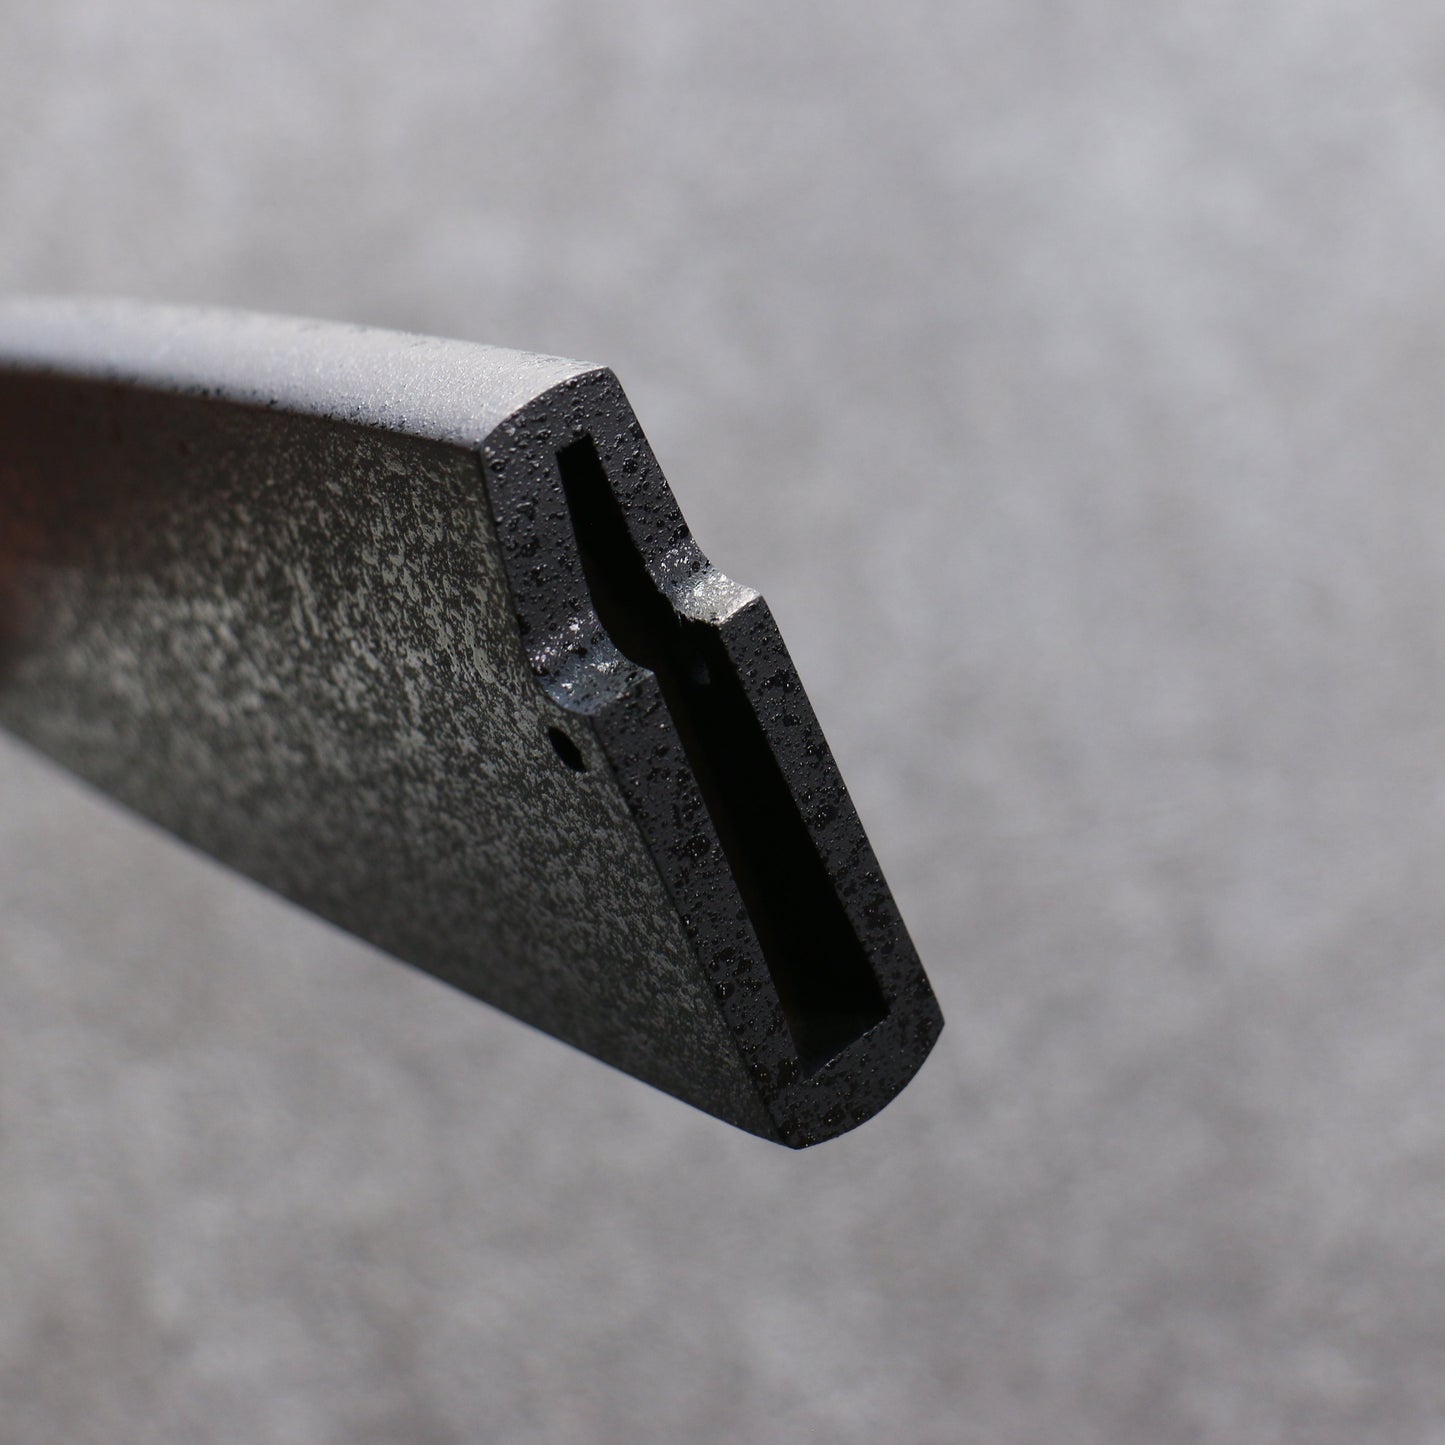 黒石目 朴 鞘 180mm 出刃包丁用 合板ピン付き - 清助刃物